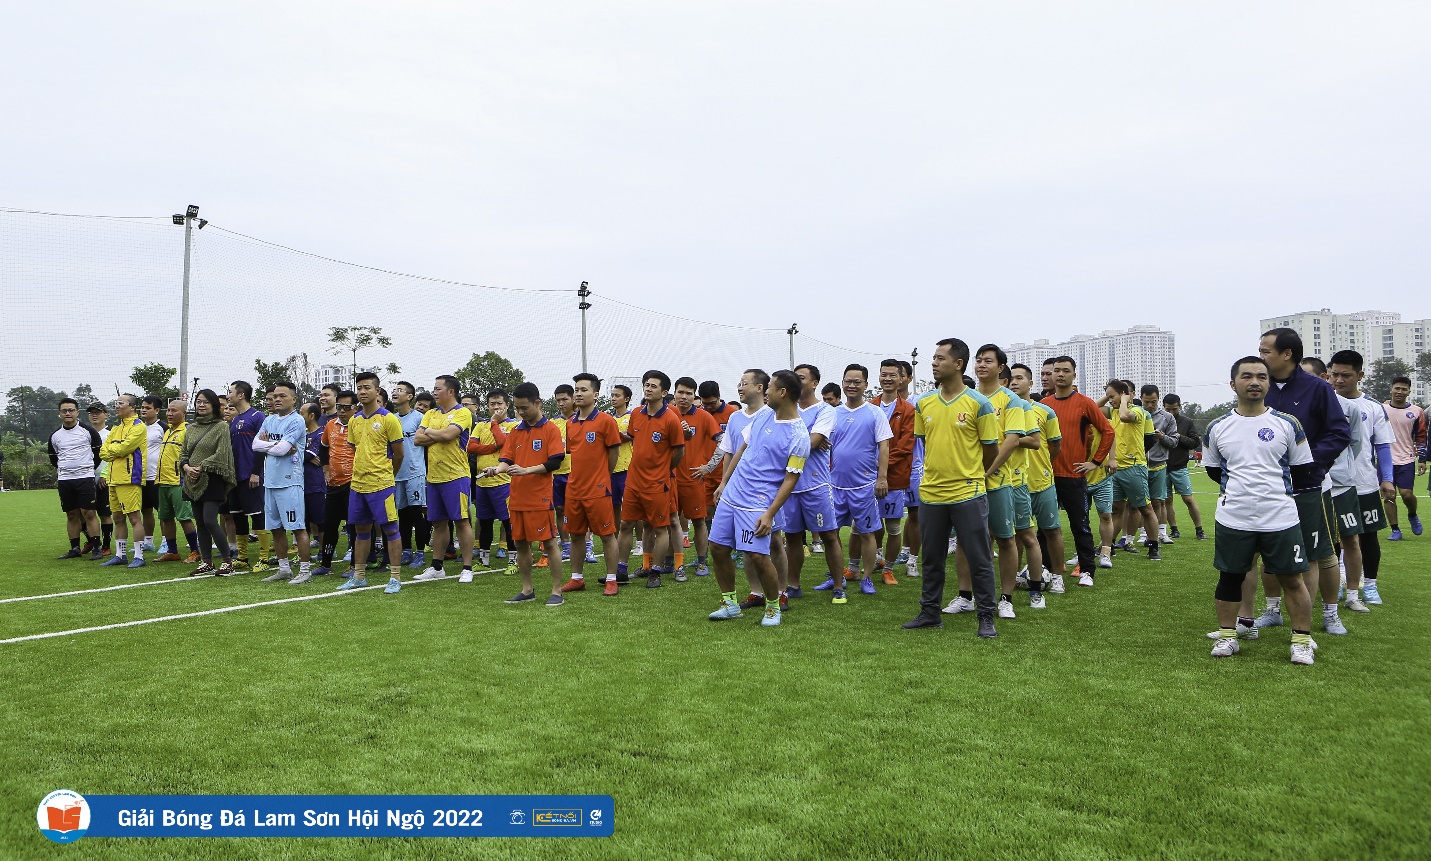 Giải bóng đá Cúp Lam Sơn hội ngộ 2022 thành công tốt đẹp - Ảnh 1.